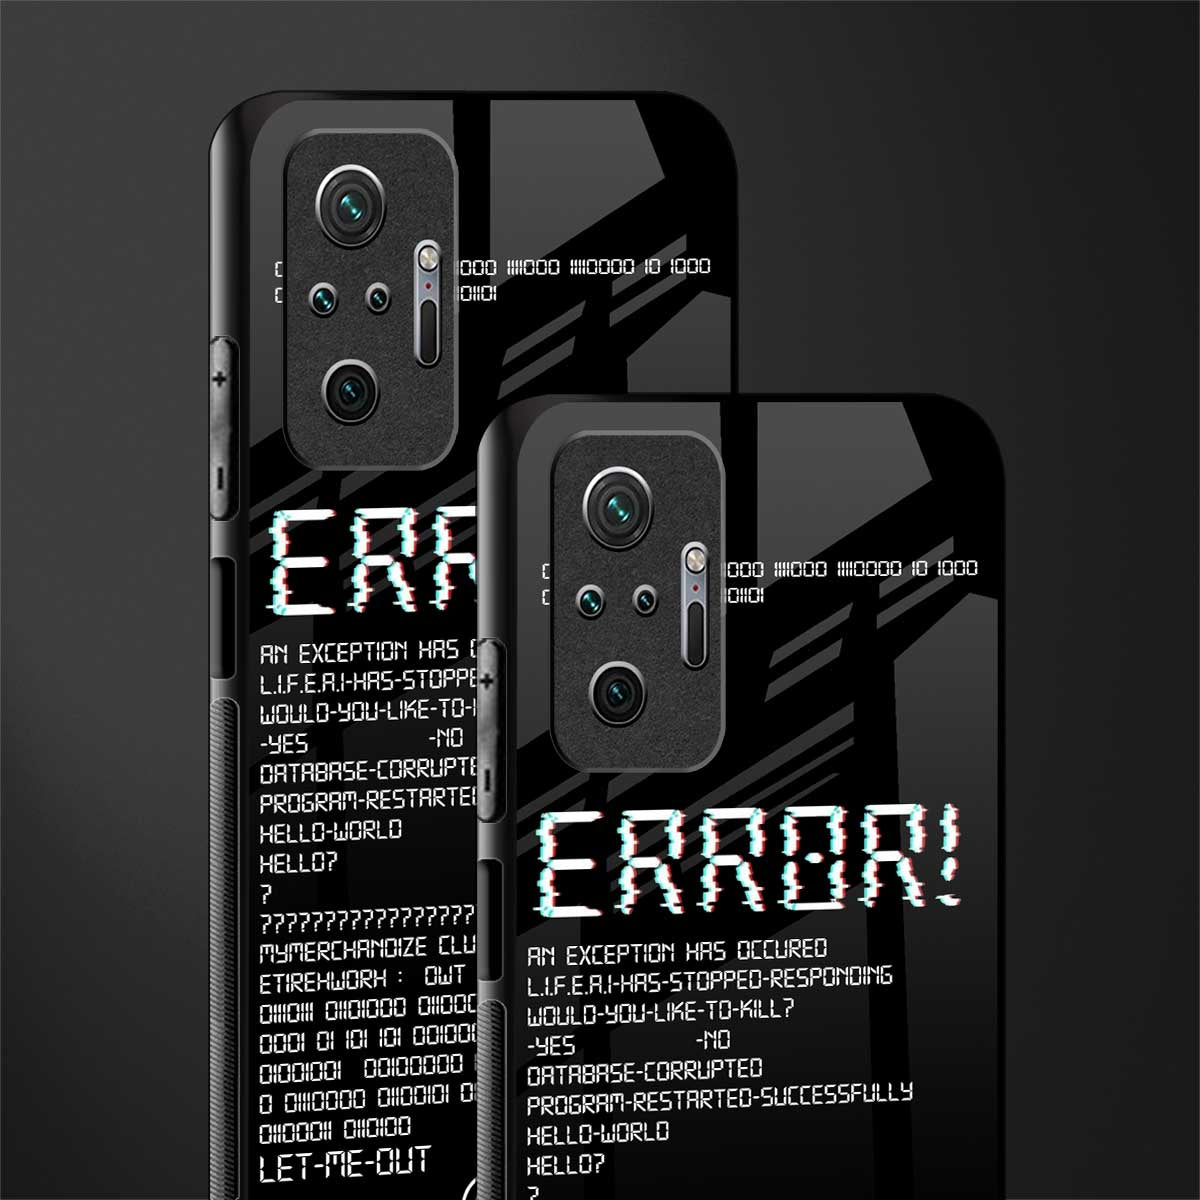 error glass case for redmi note 10 pro image-2